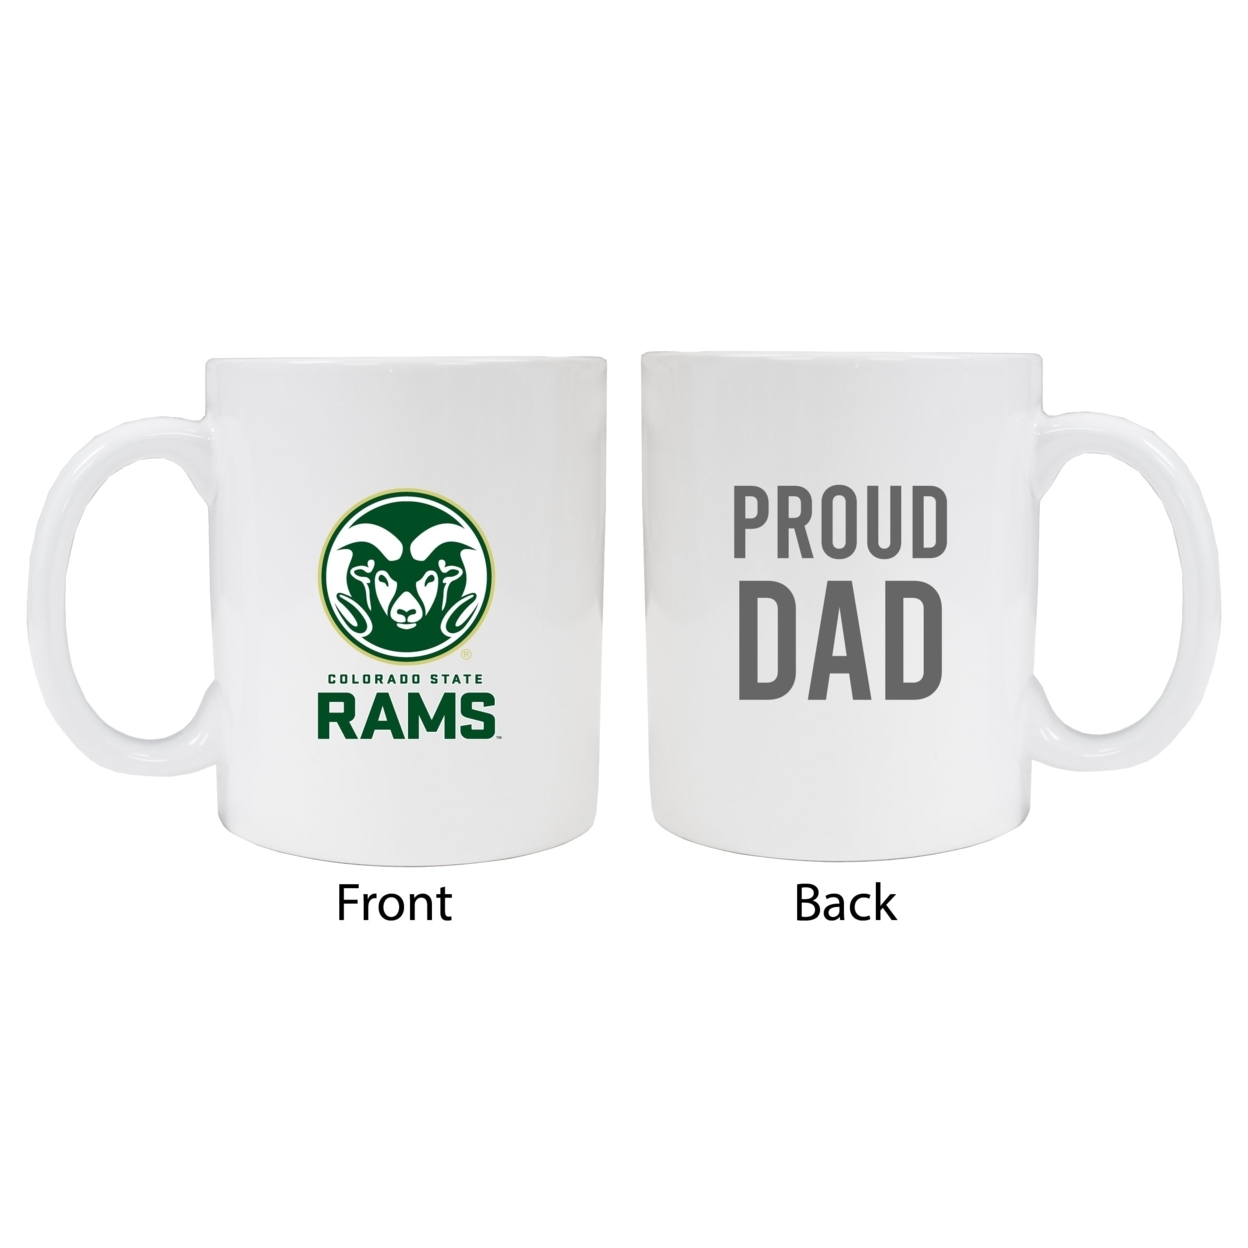 Colorado State Rams Proud Dad Ceramic Coffee Mug - White